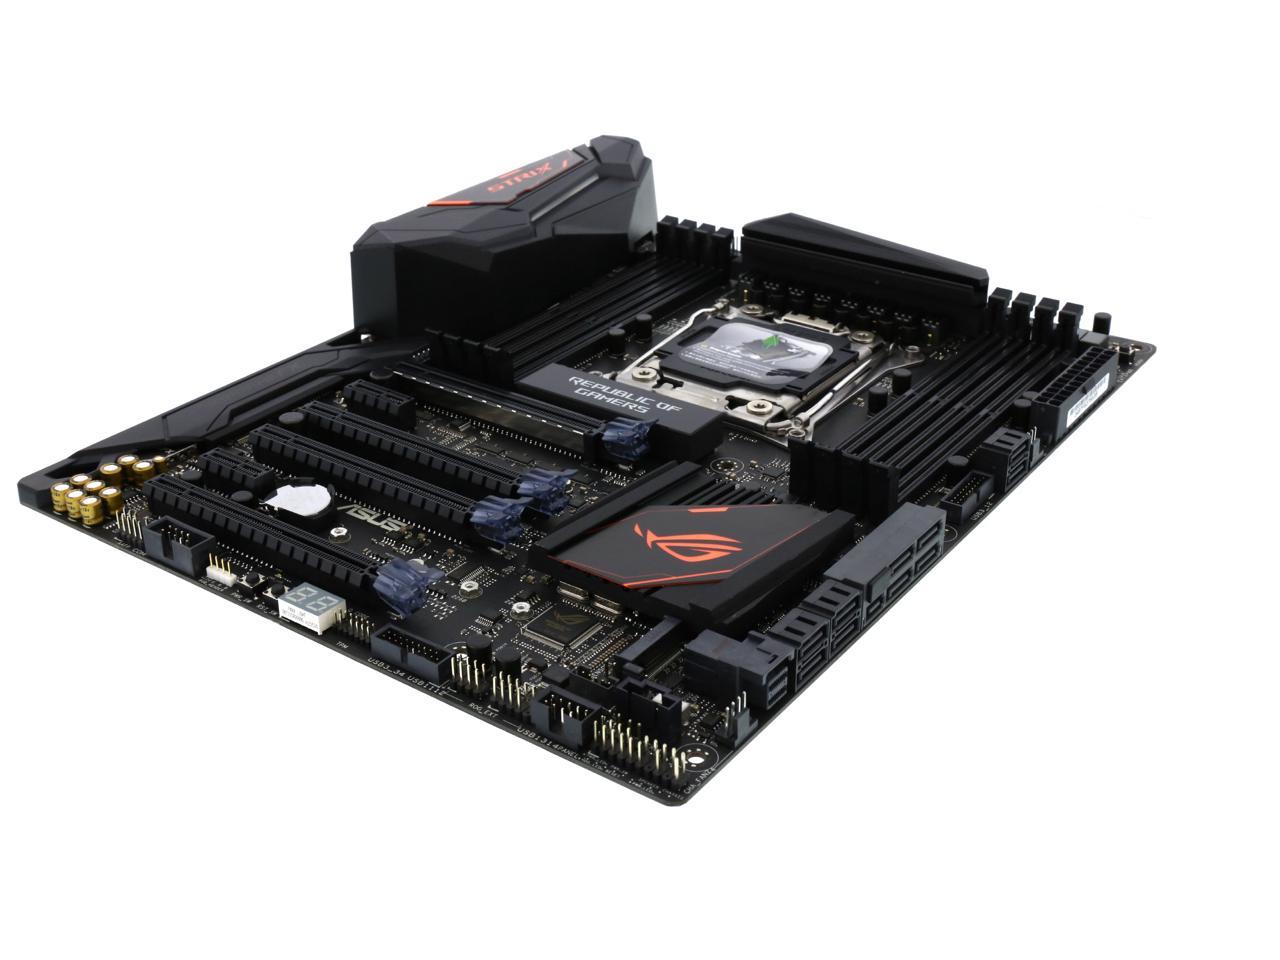 ASUS ROG STRIX X99 GAMING LGA 2011-v3 Intel X99 SATA 6Gb/s USB 3.1 ATX  Intel Motherboard